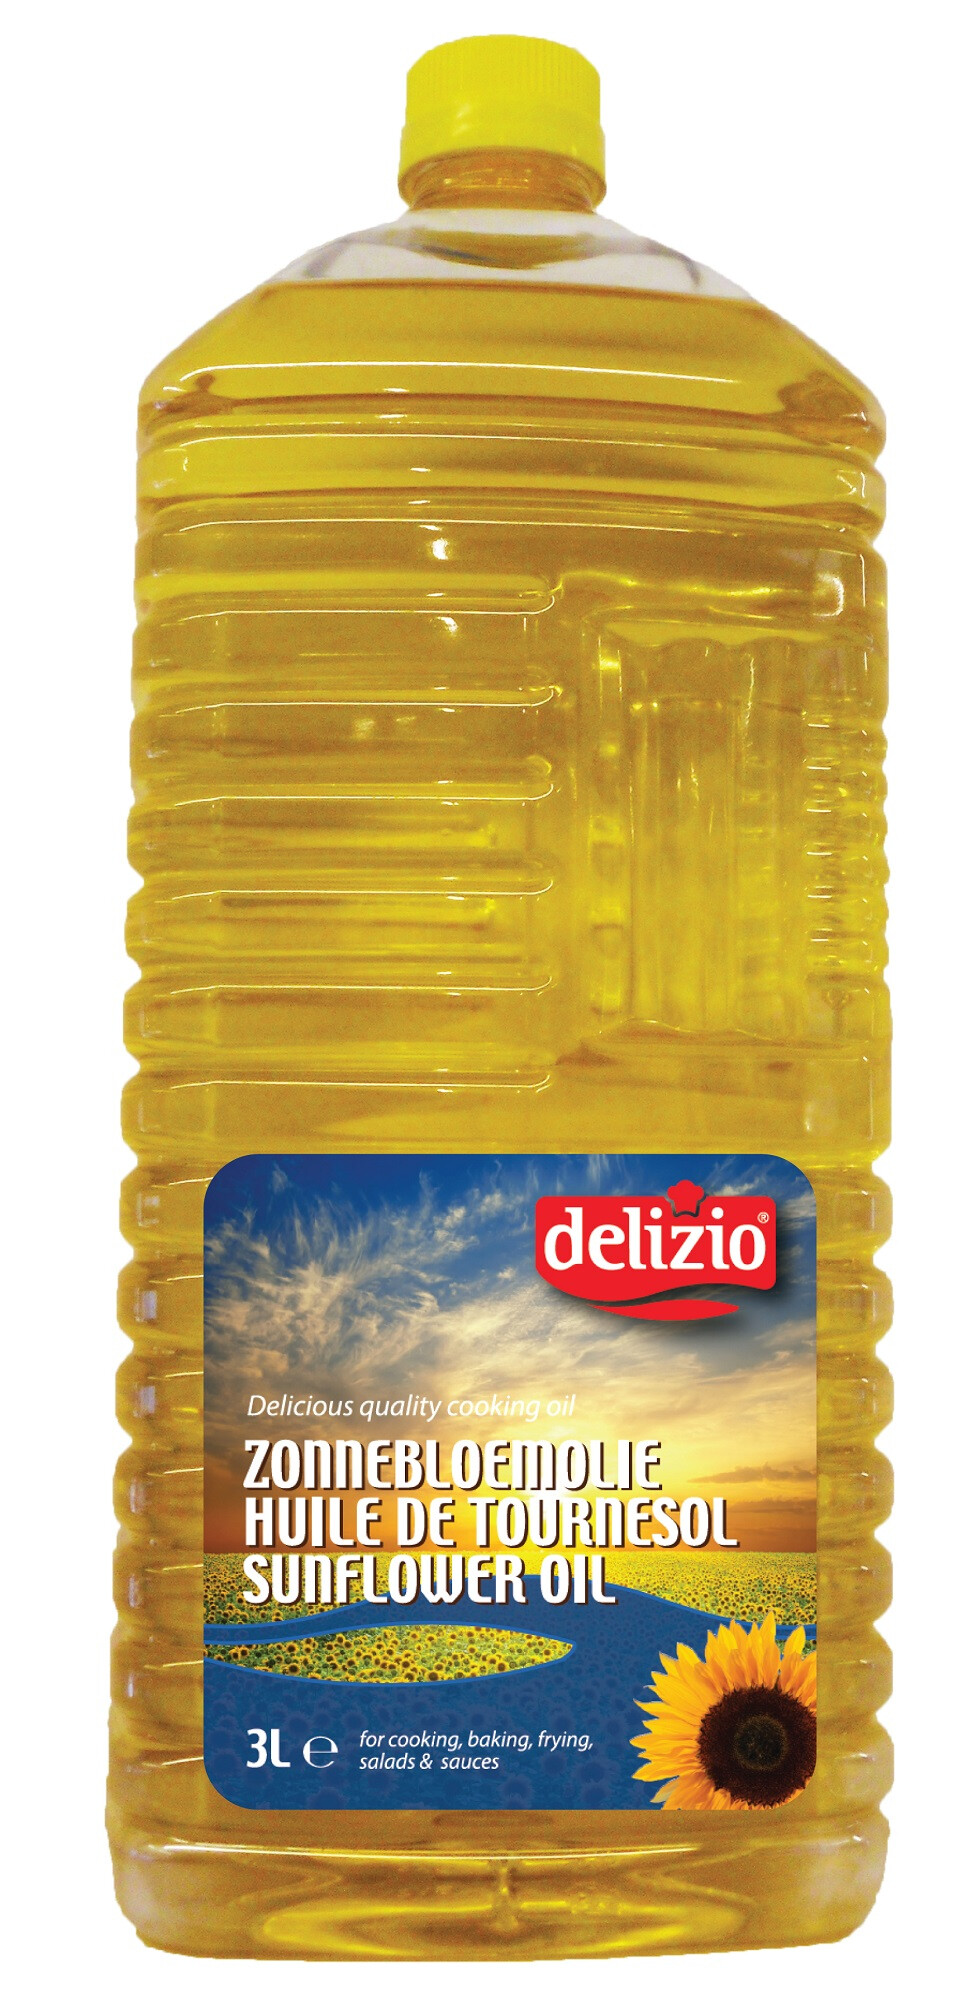 Delizio Sunflower oil 3L Pet bottle